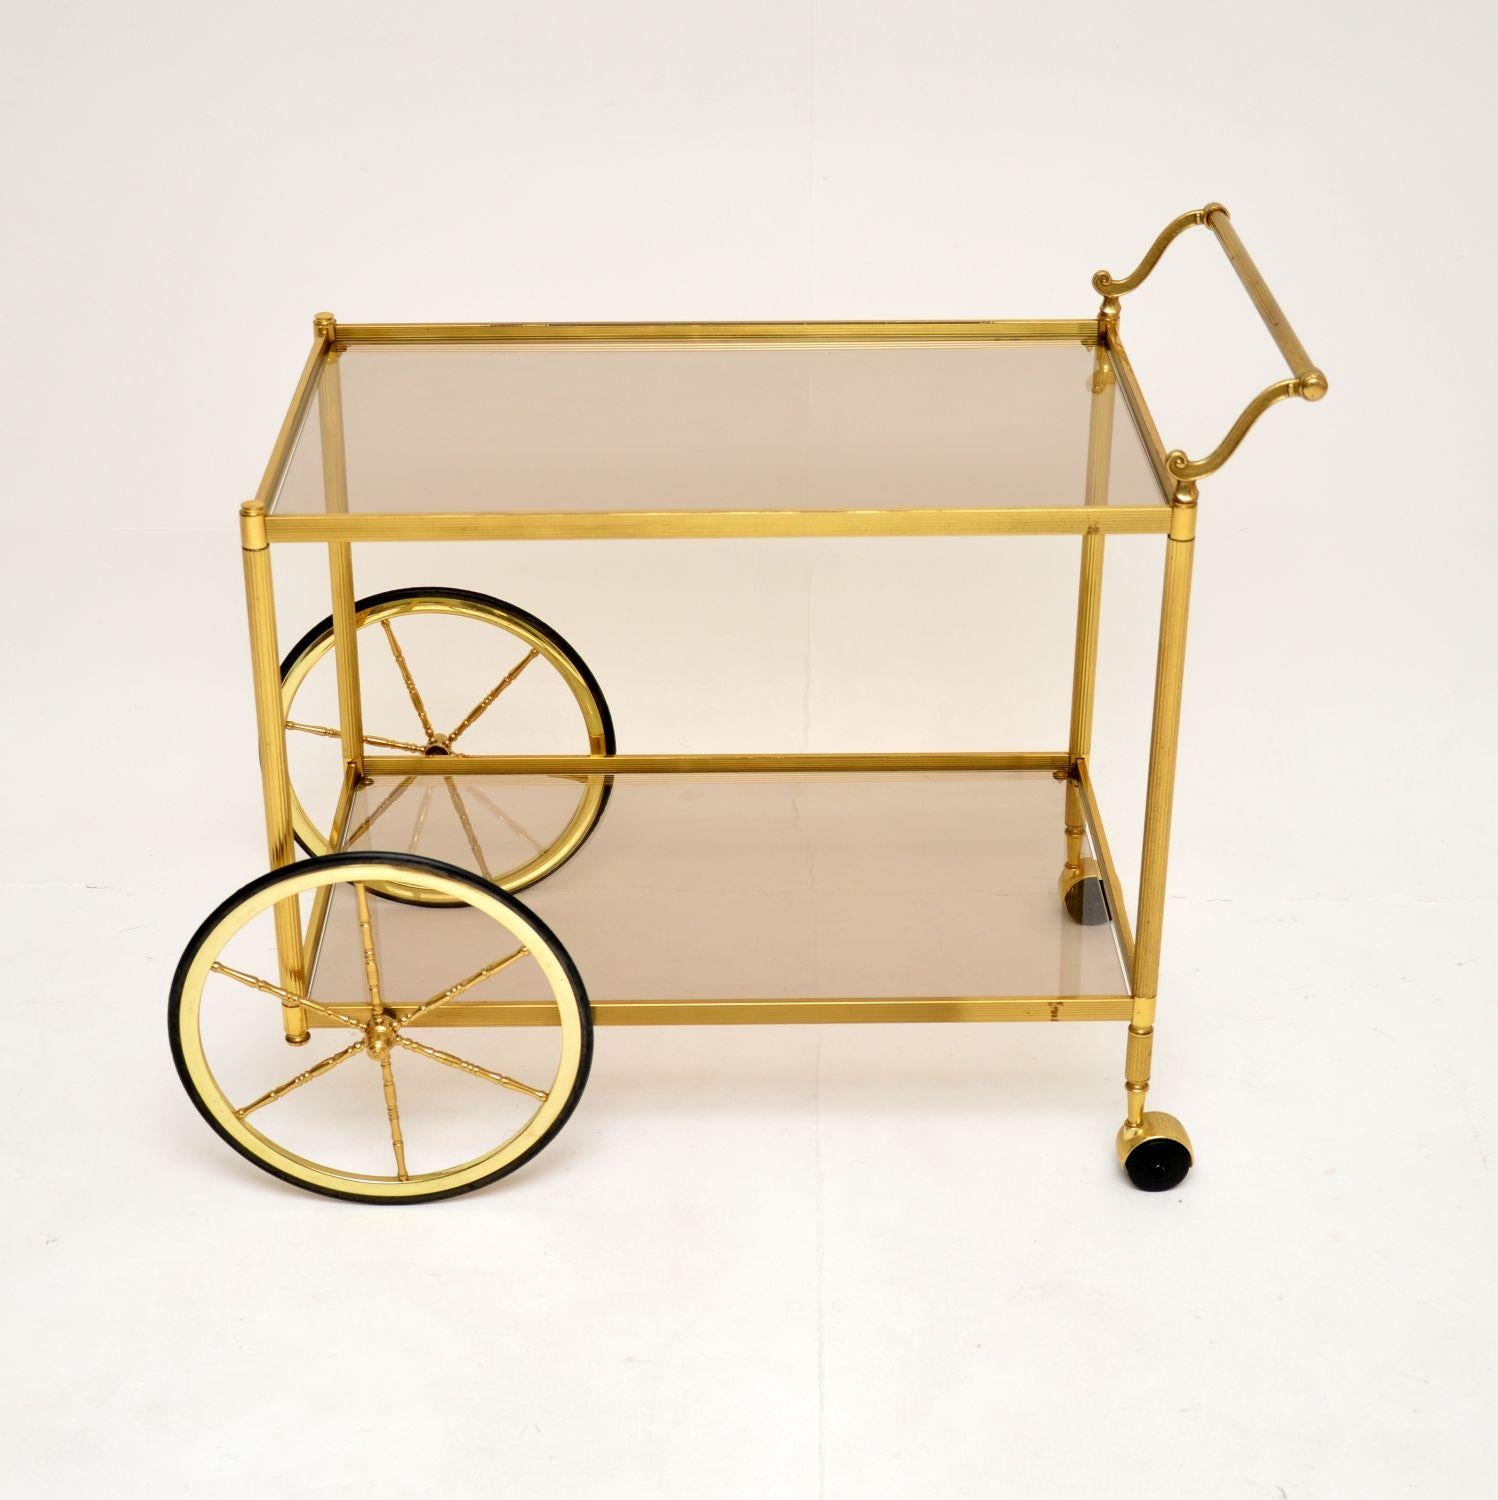 Chariot à boissons / chariot de bar en laiton et verre, très élégant et utile, datant des années 1970.

La qualité est fantastique, ce modèle est de grande taille et est magnifiquement conçu, avec des supports en laiton cannelé, une poignée en